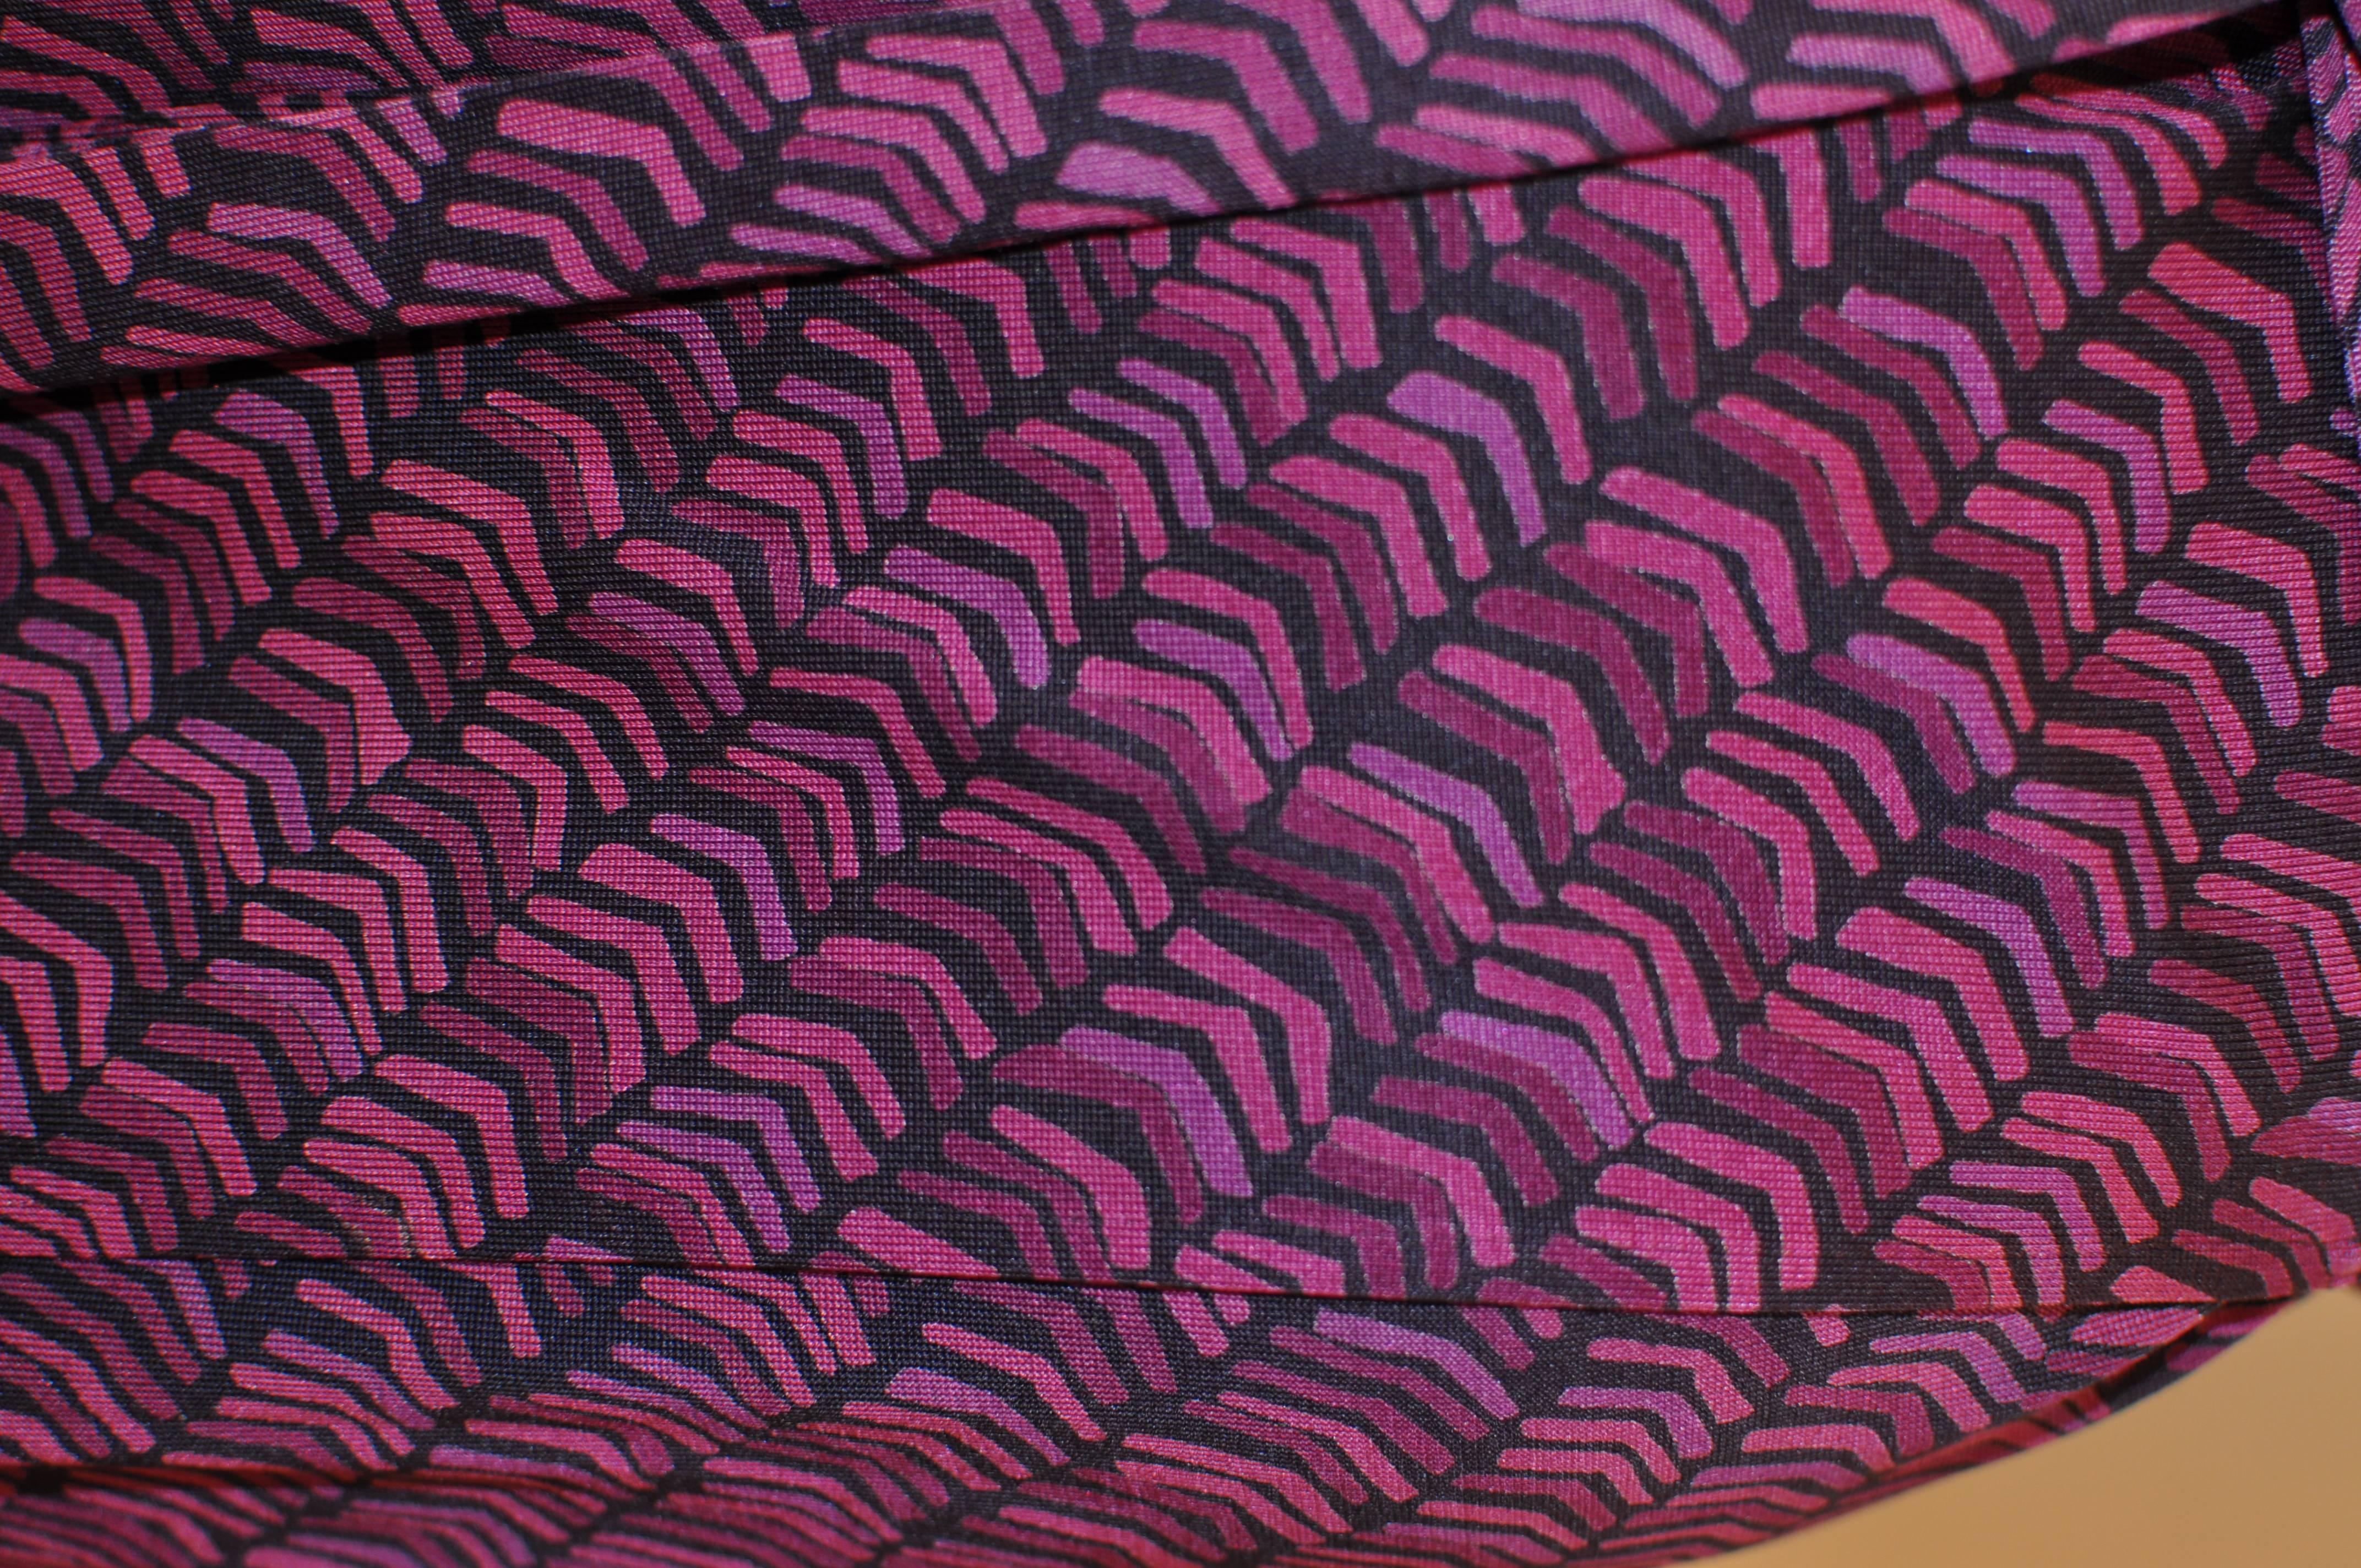 diane von furstenberg wrap dress pattern